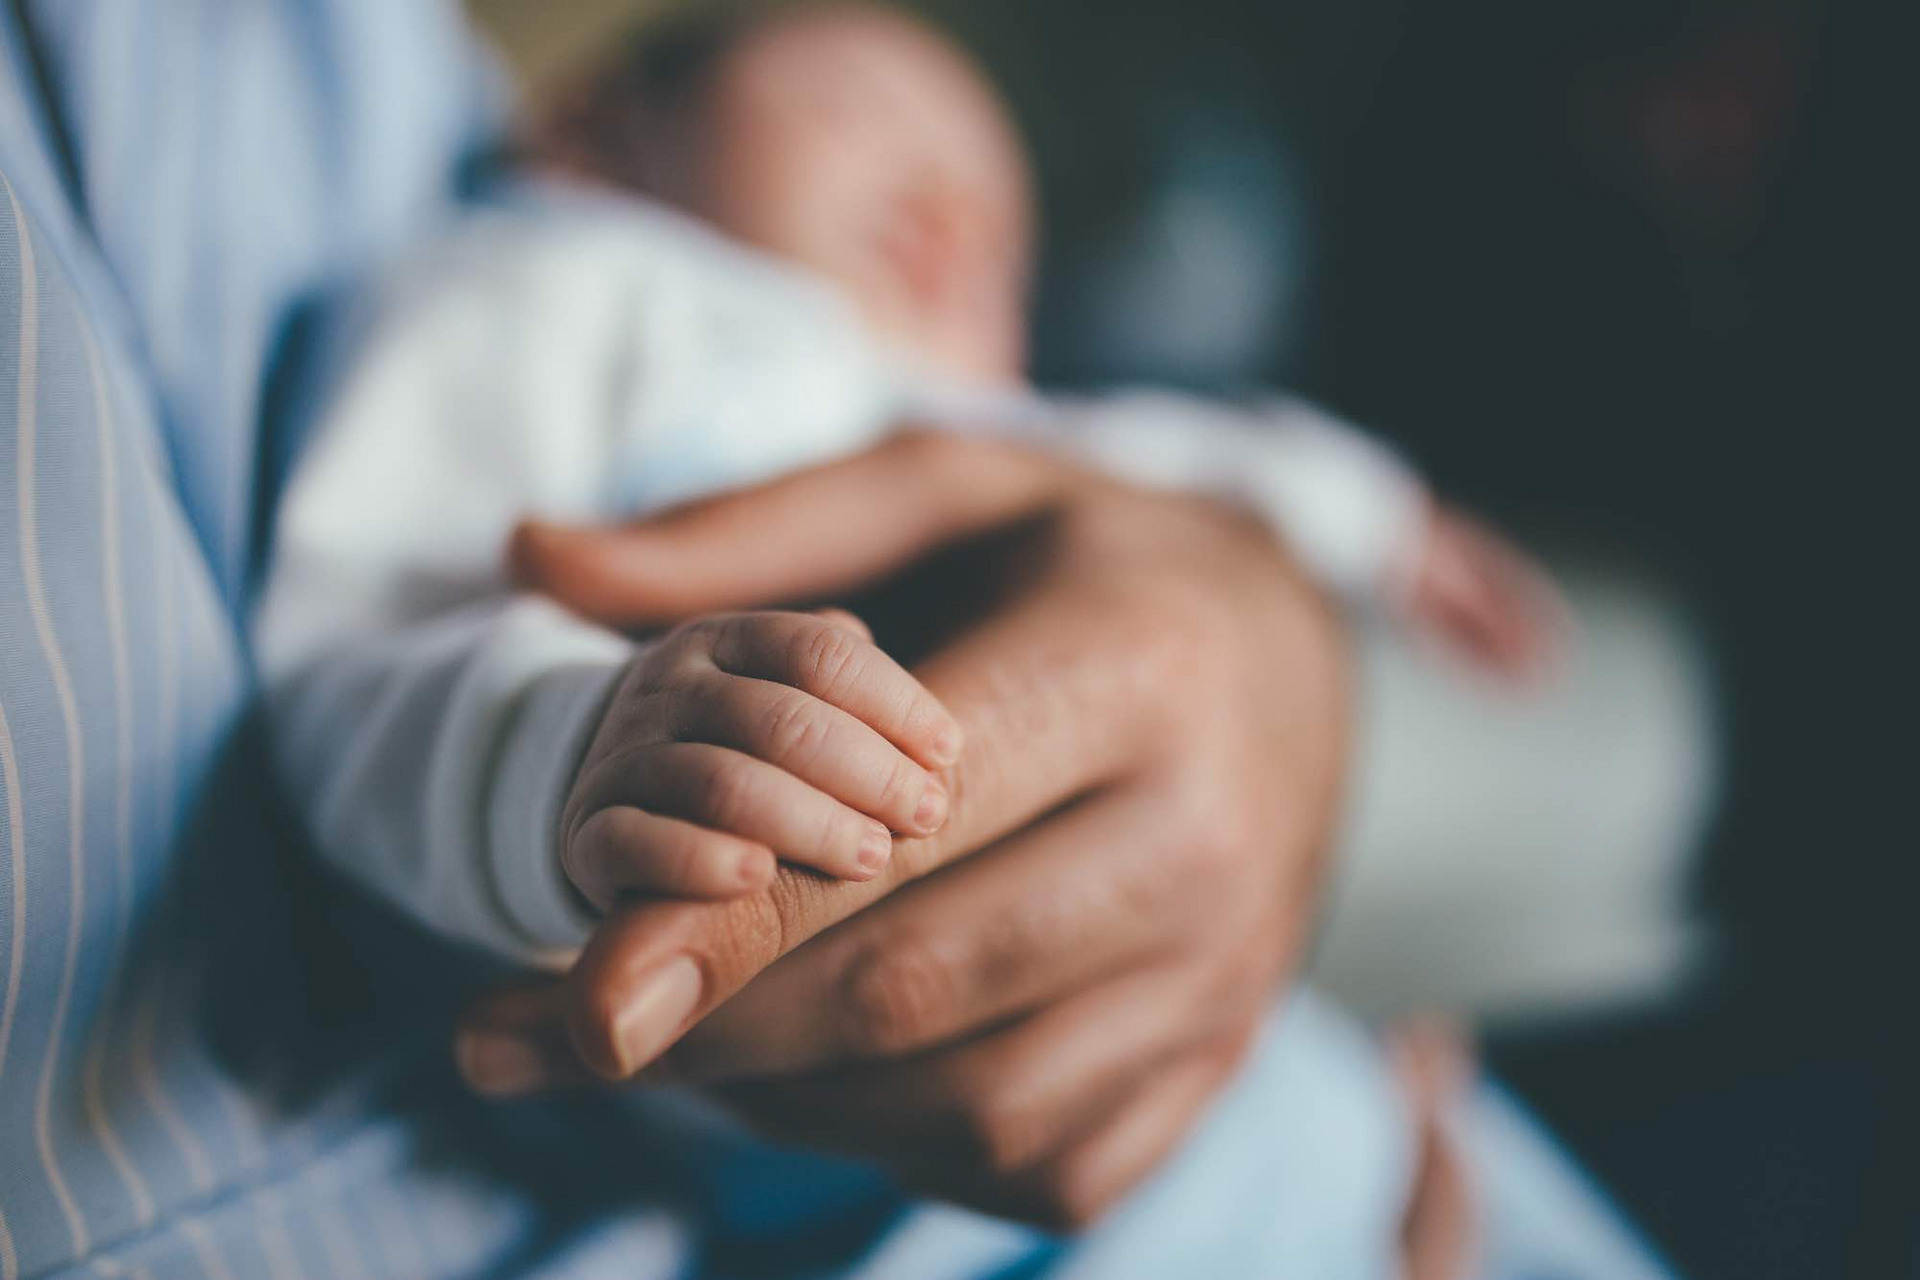 Eine Babyhand umfasst den Finger eines Erwachsenen.